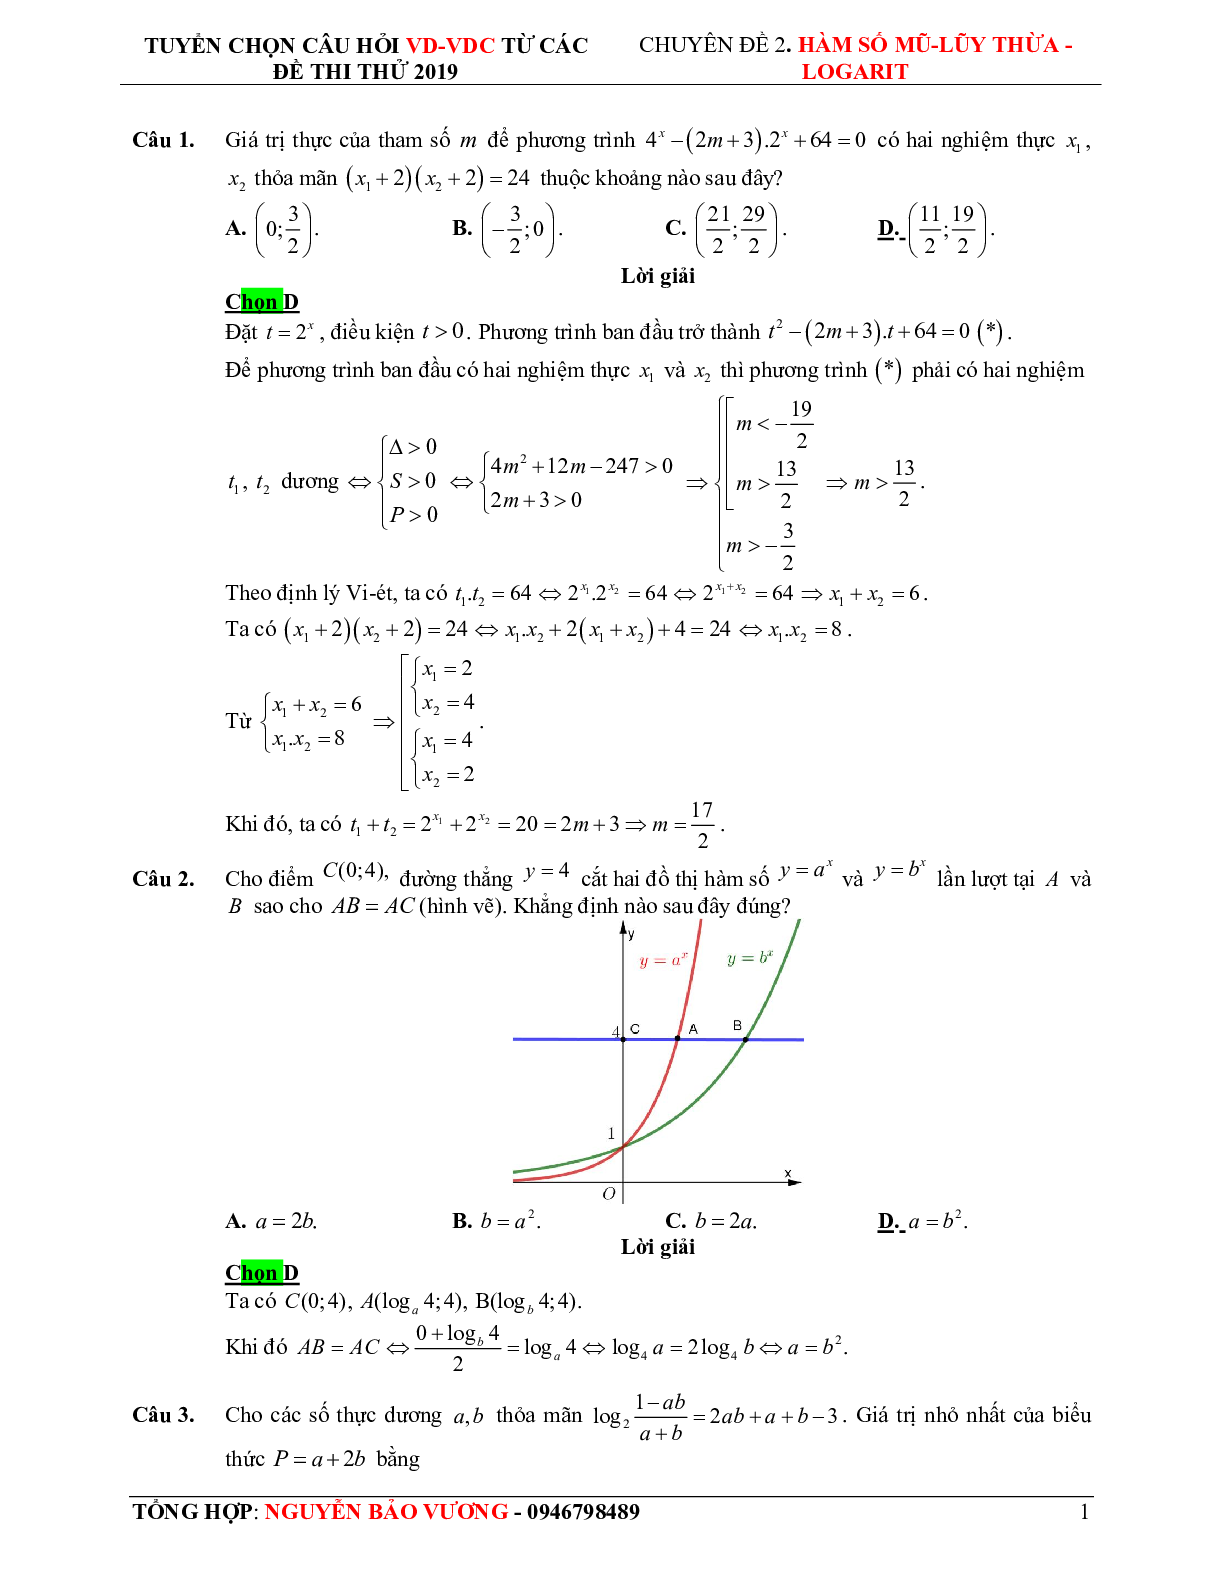 57 bài toán vận dụng - vận dụng cao hàm số mũ, logarit - có lời giải chi tiết (trang 9)